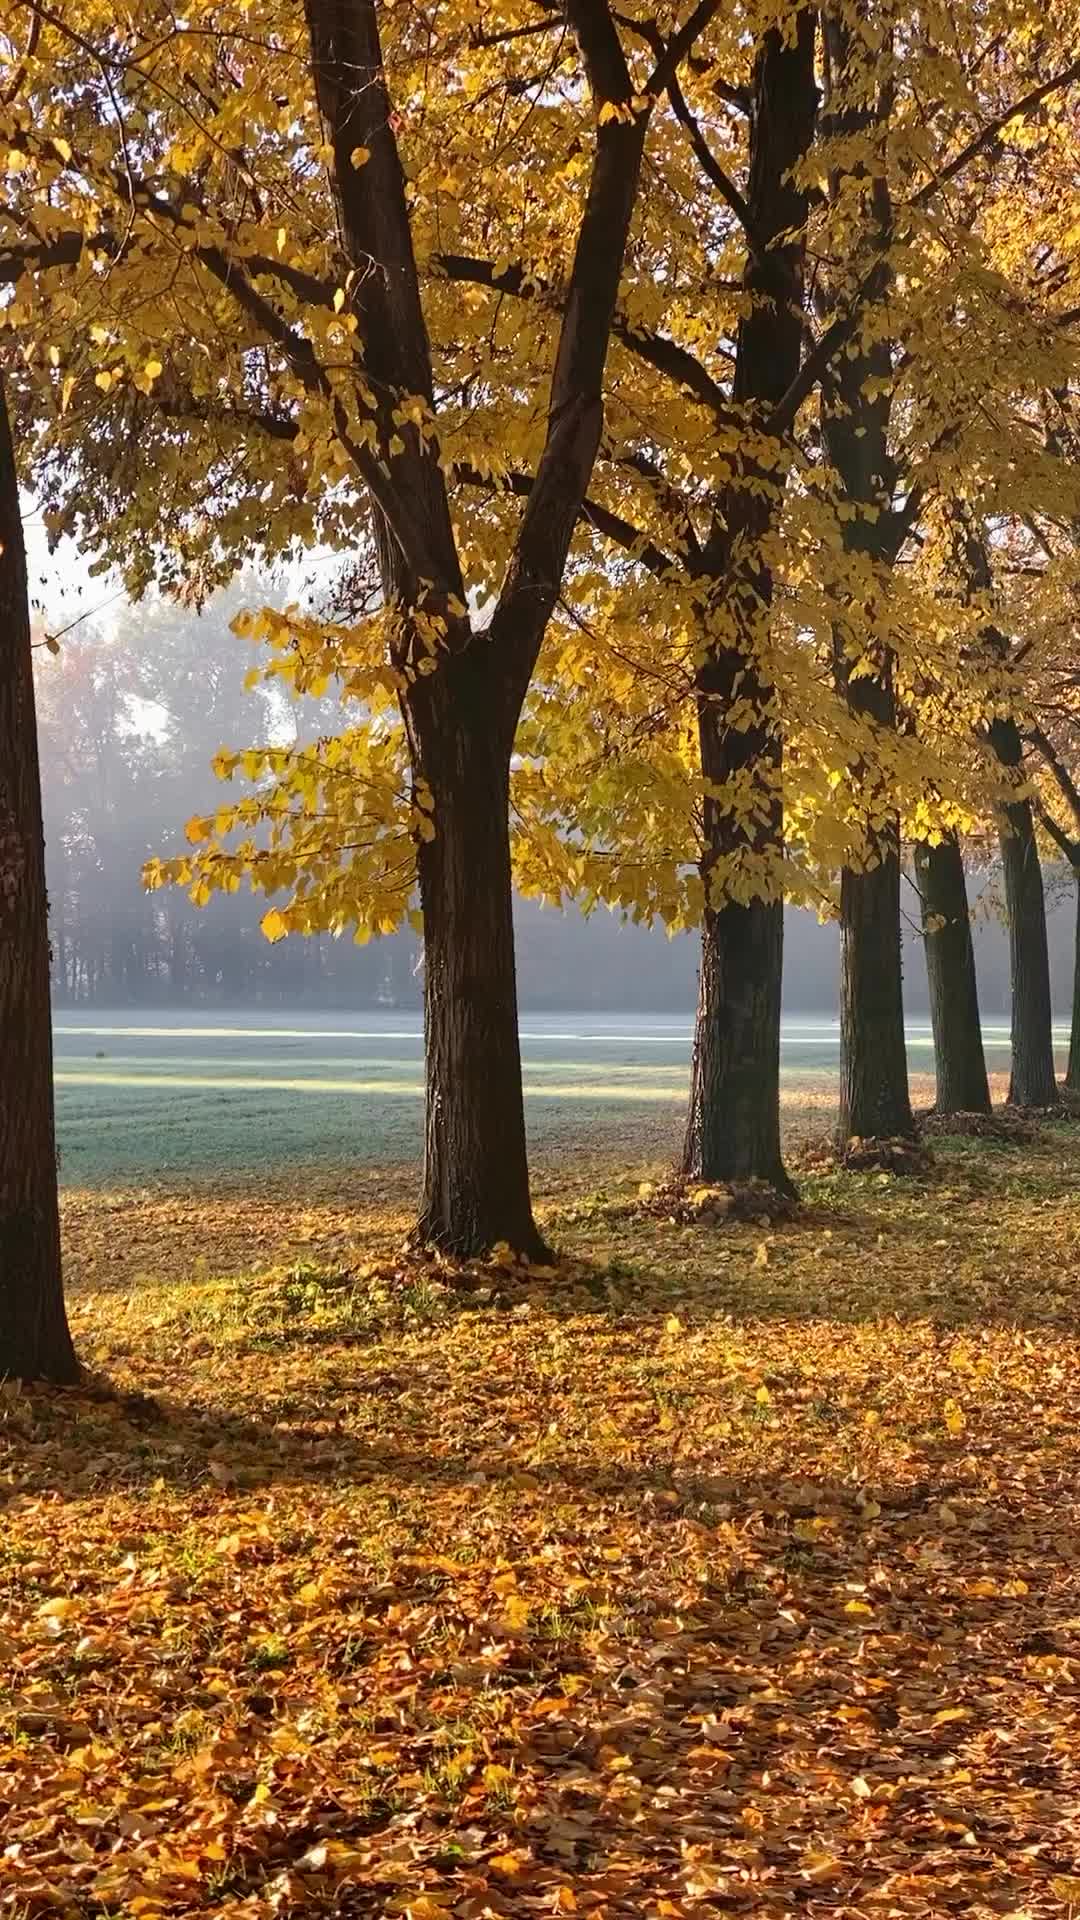 Autumn Splendor at Parco di Monza 🍂🍁 | Monza, Italy